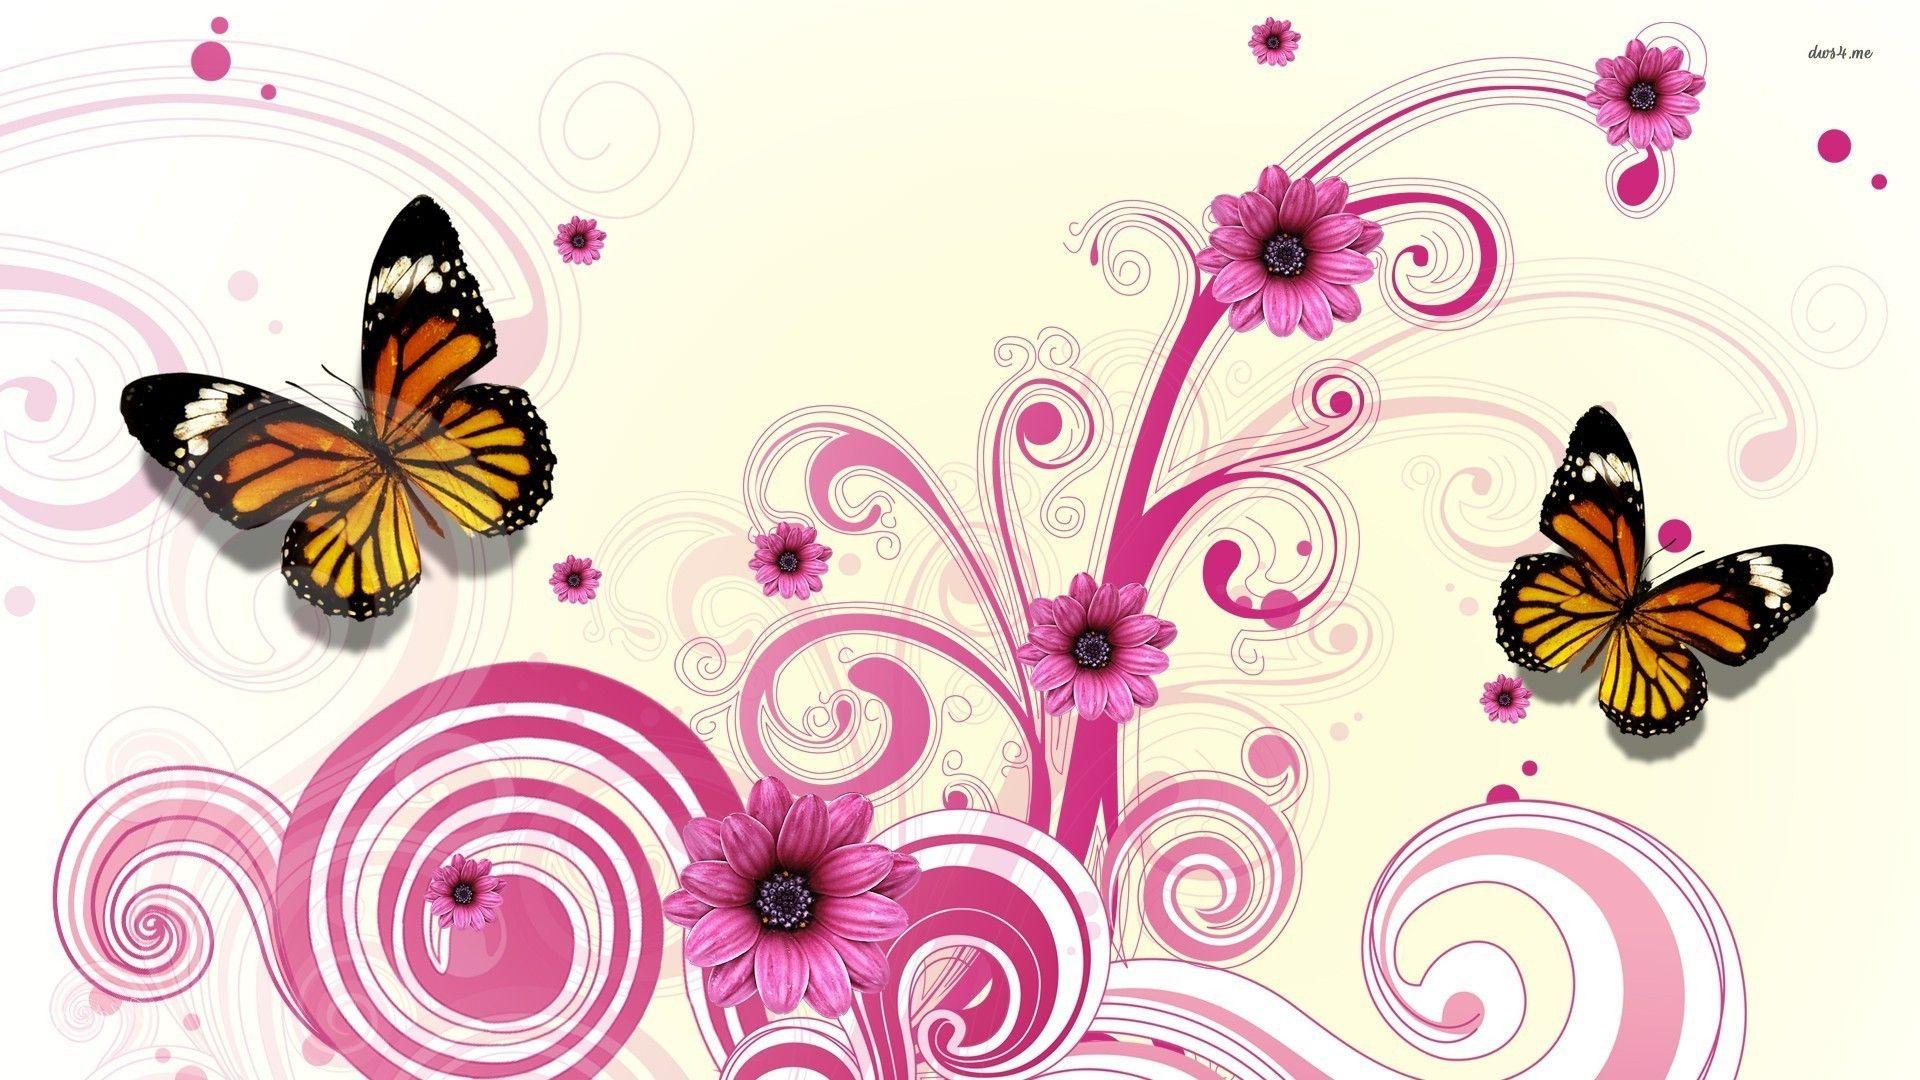 Butterflies and pink daisies wallpaper. Butterfly Art